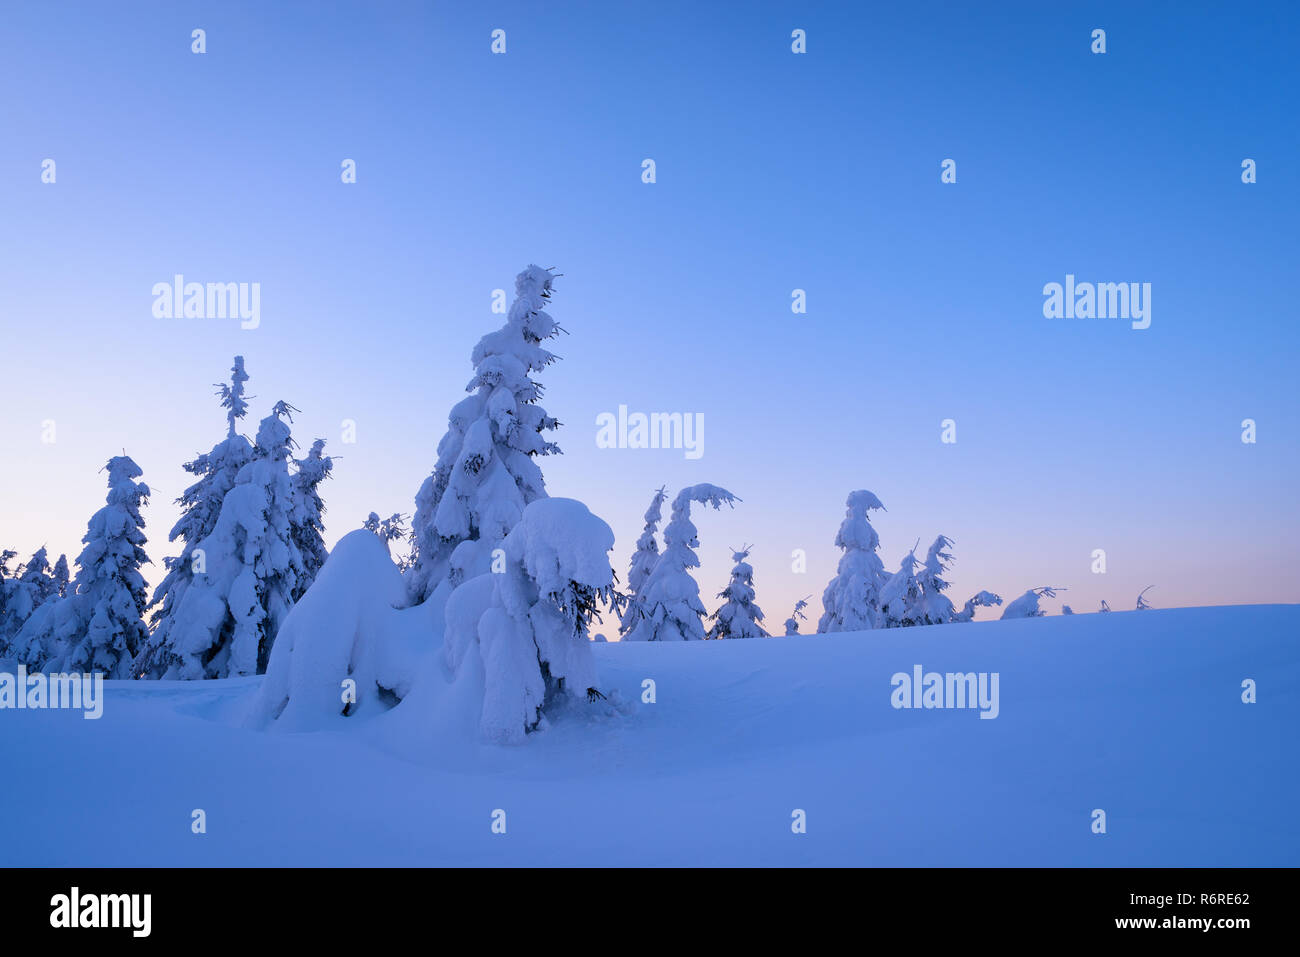 Winter Wonderland avec sapins couverts de neige et de grands bancs de neige. Paysage sombre en bleu Banque D'Images